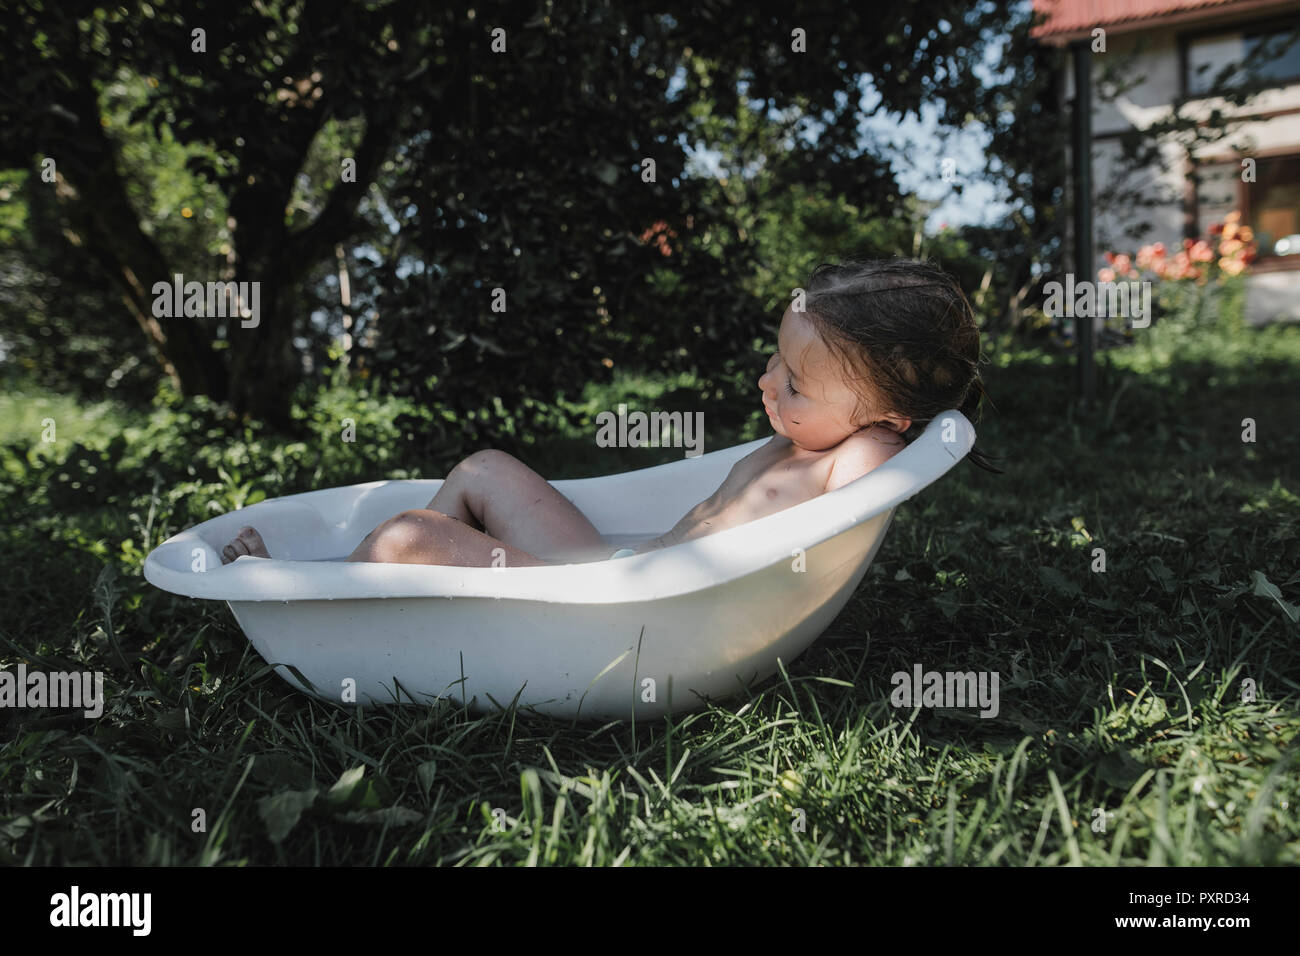 Kleines Mädchen In Der Badewanne Entspannen Im Garten Stockfotografie Alamy